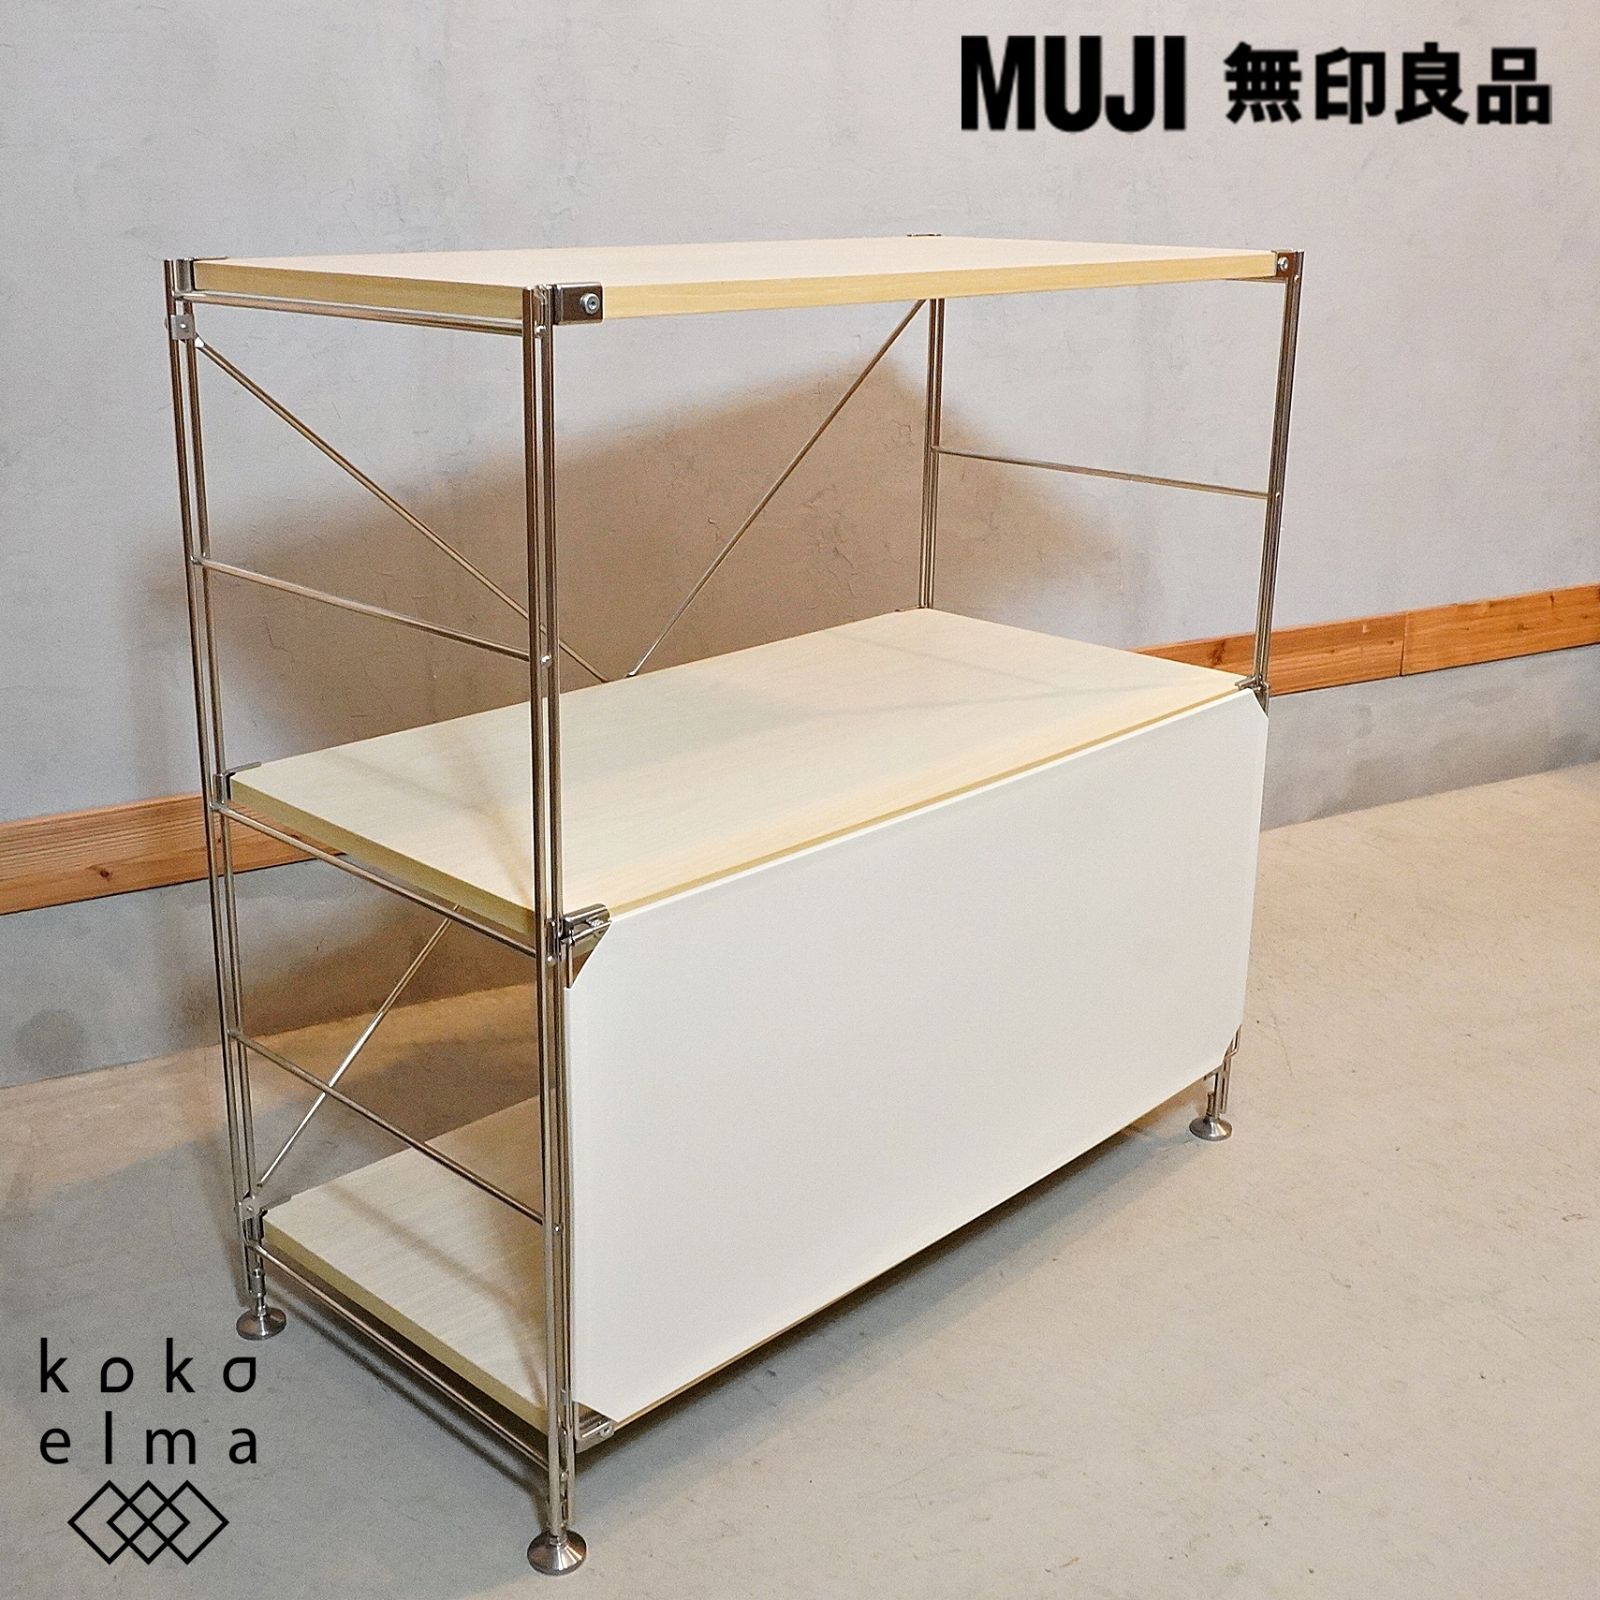 無印良品 MUJI 木製棚 ステンレス 3段 ユニットシェルフ フロント